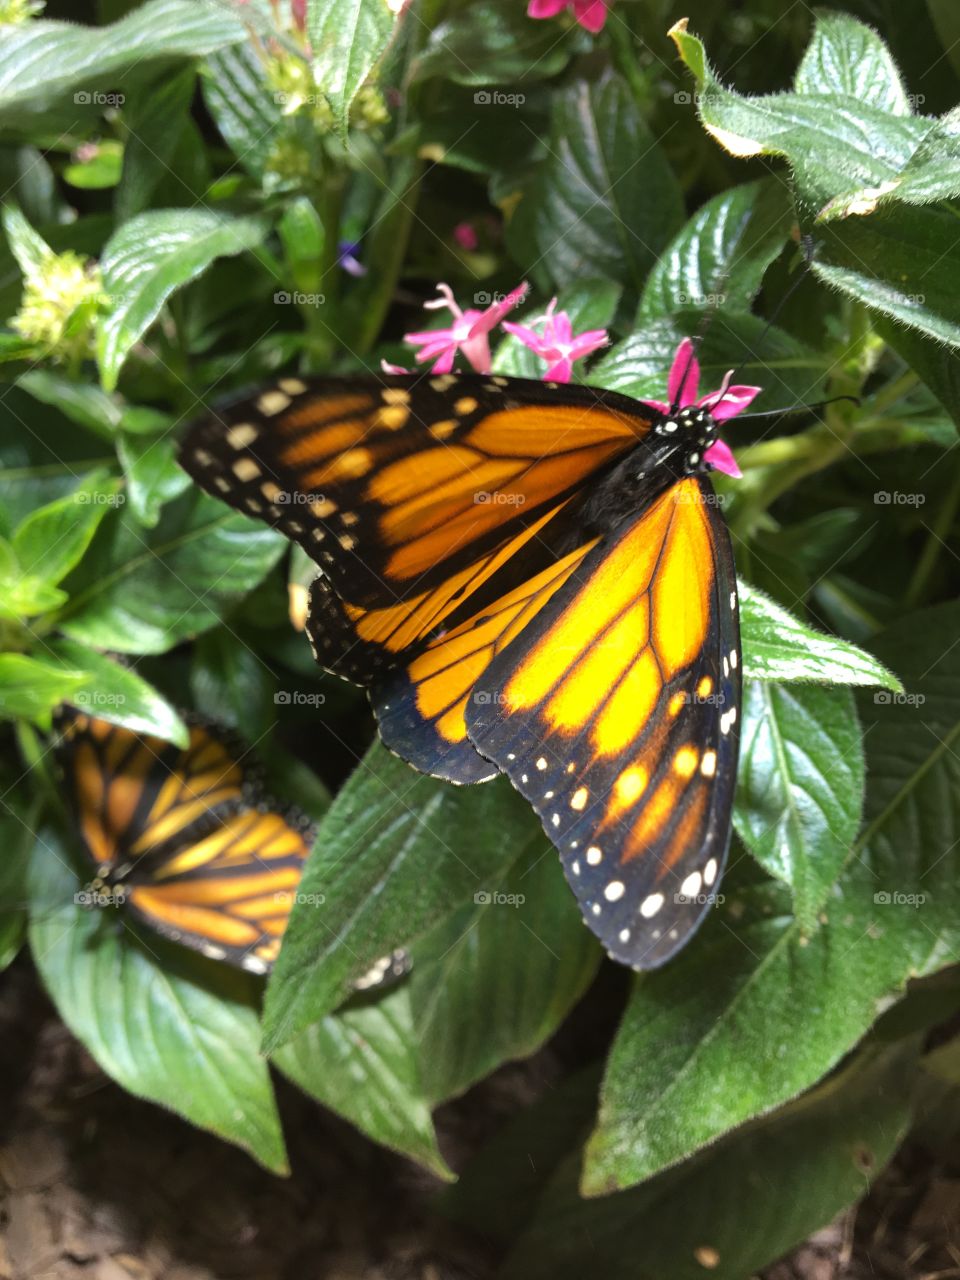 Two monarch butterflies resting in a flower bush